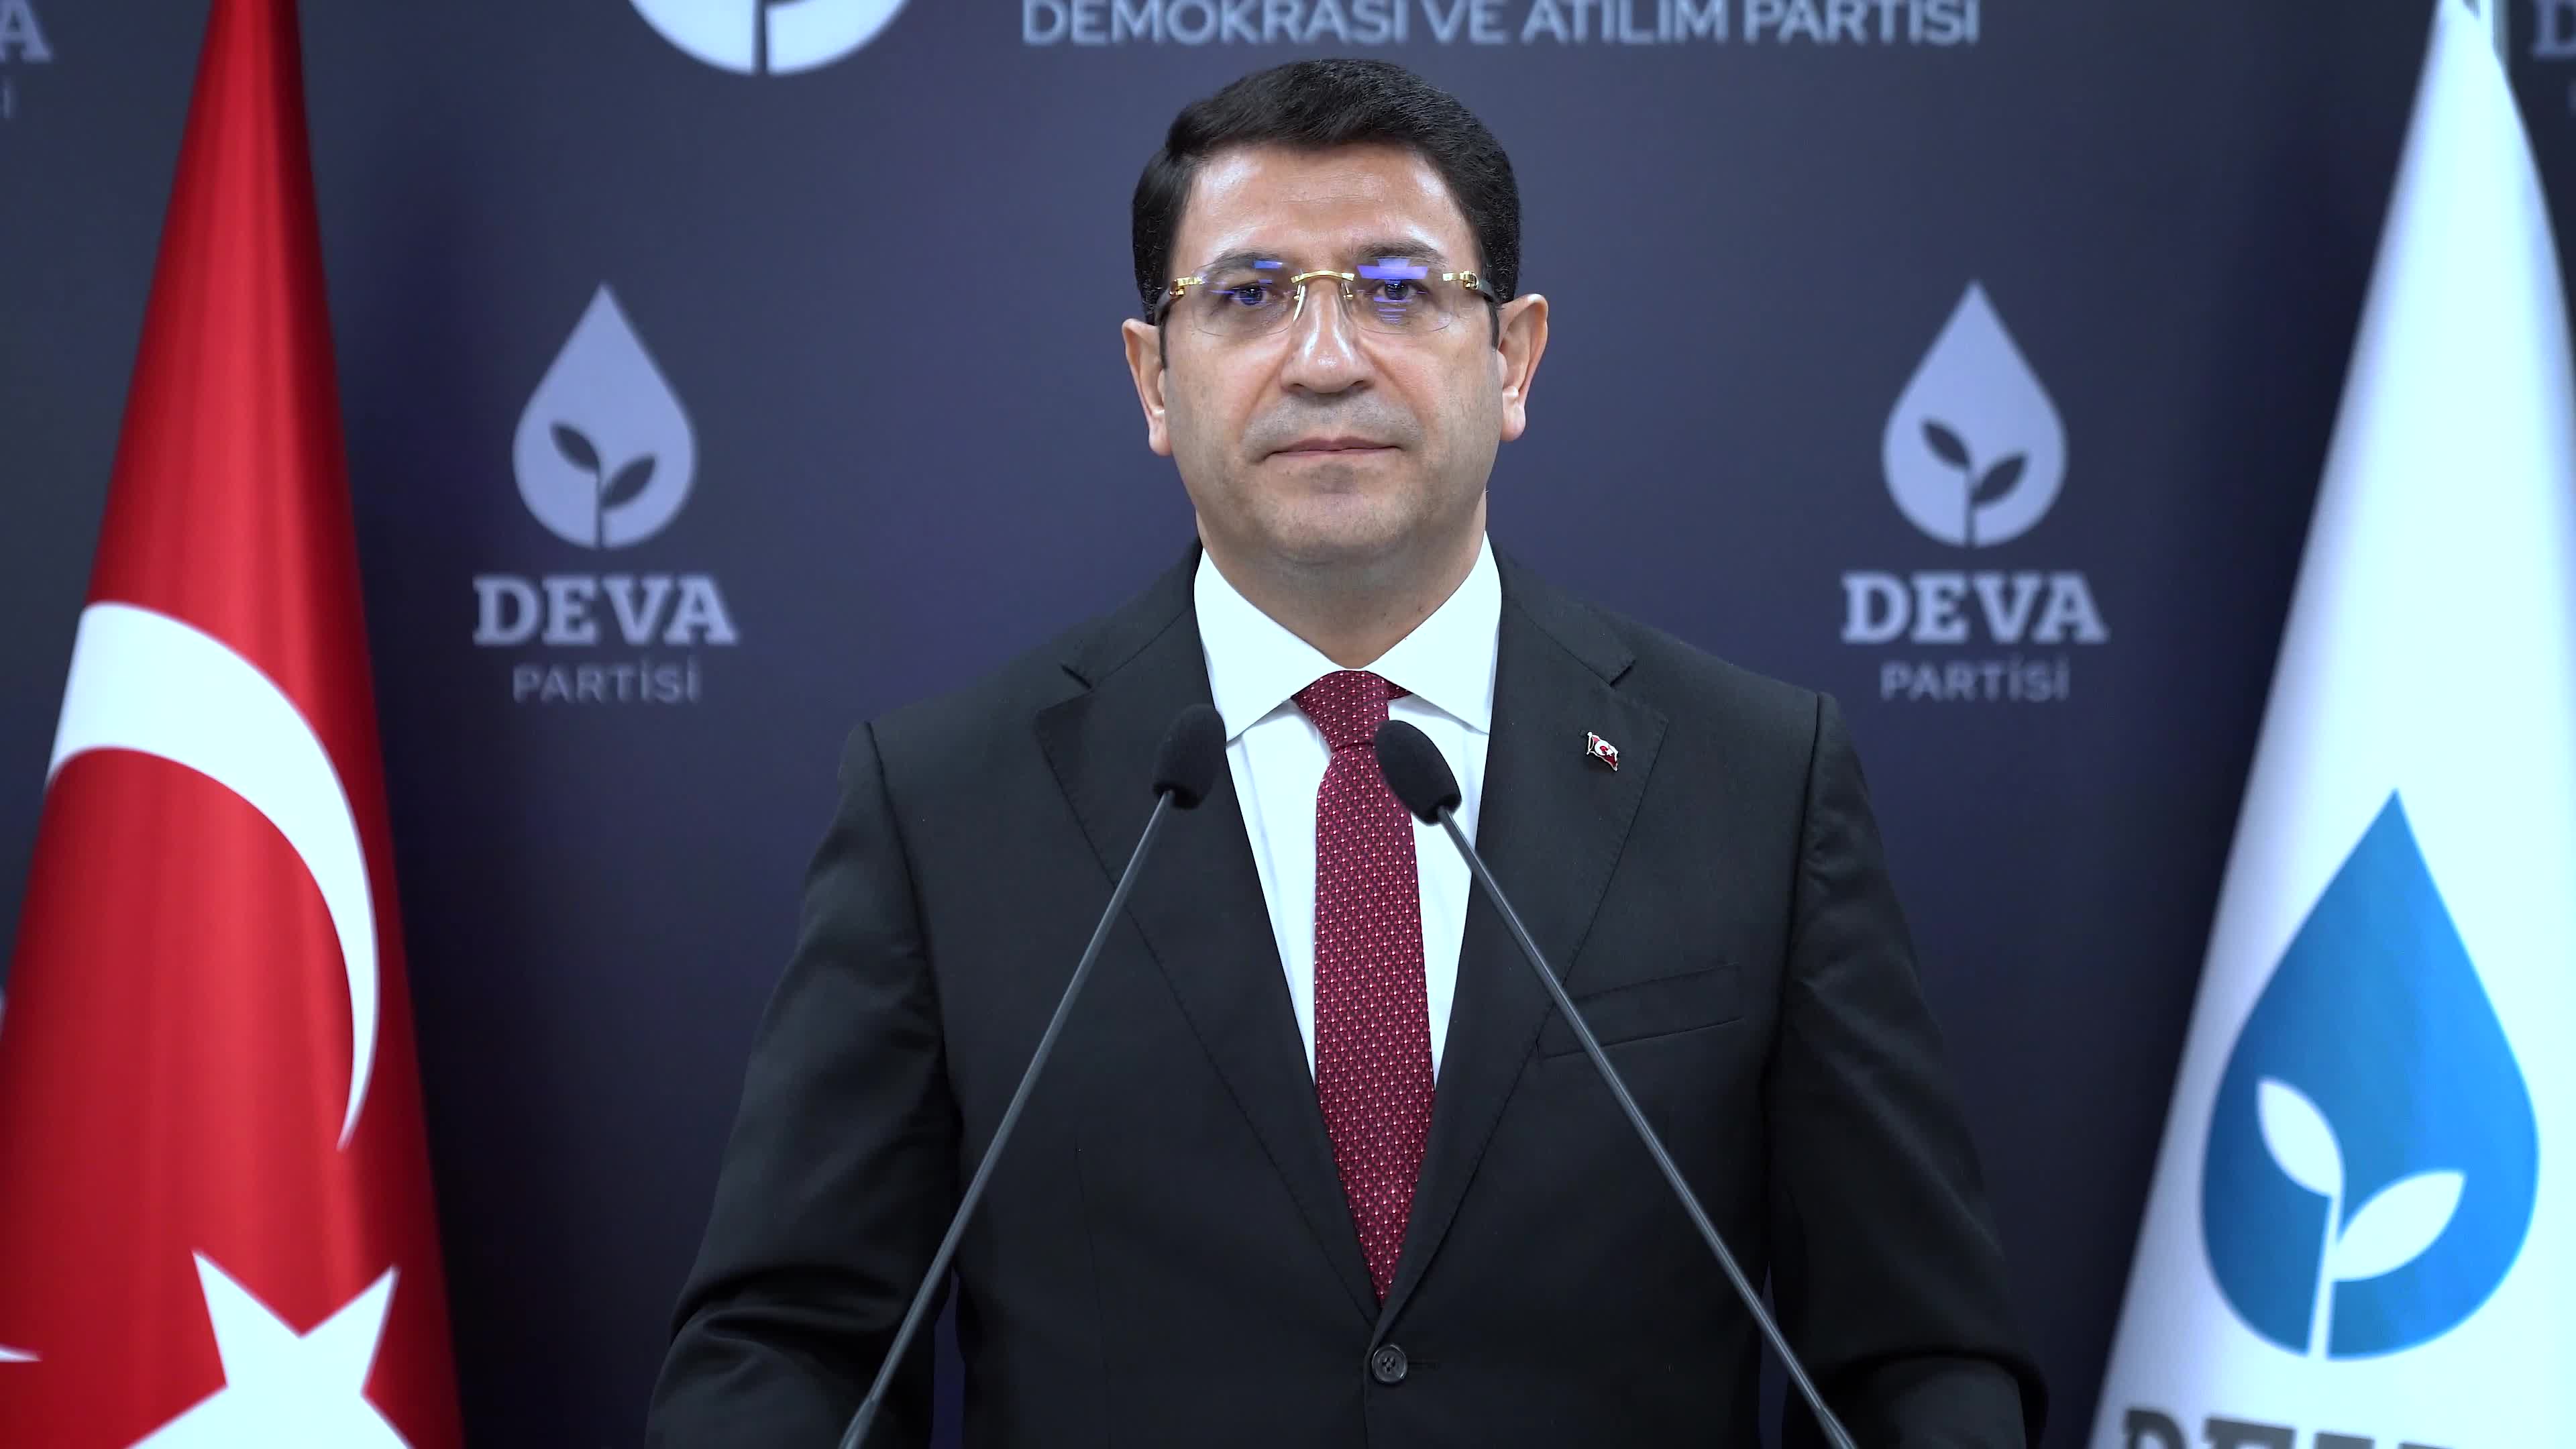 DEVA Partisi Sözcüsü Şahin: "Metin Gürcan dosyası Deva Partisi'ni hedef alan bir saldırı projesine dönüştü"